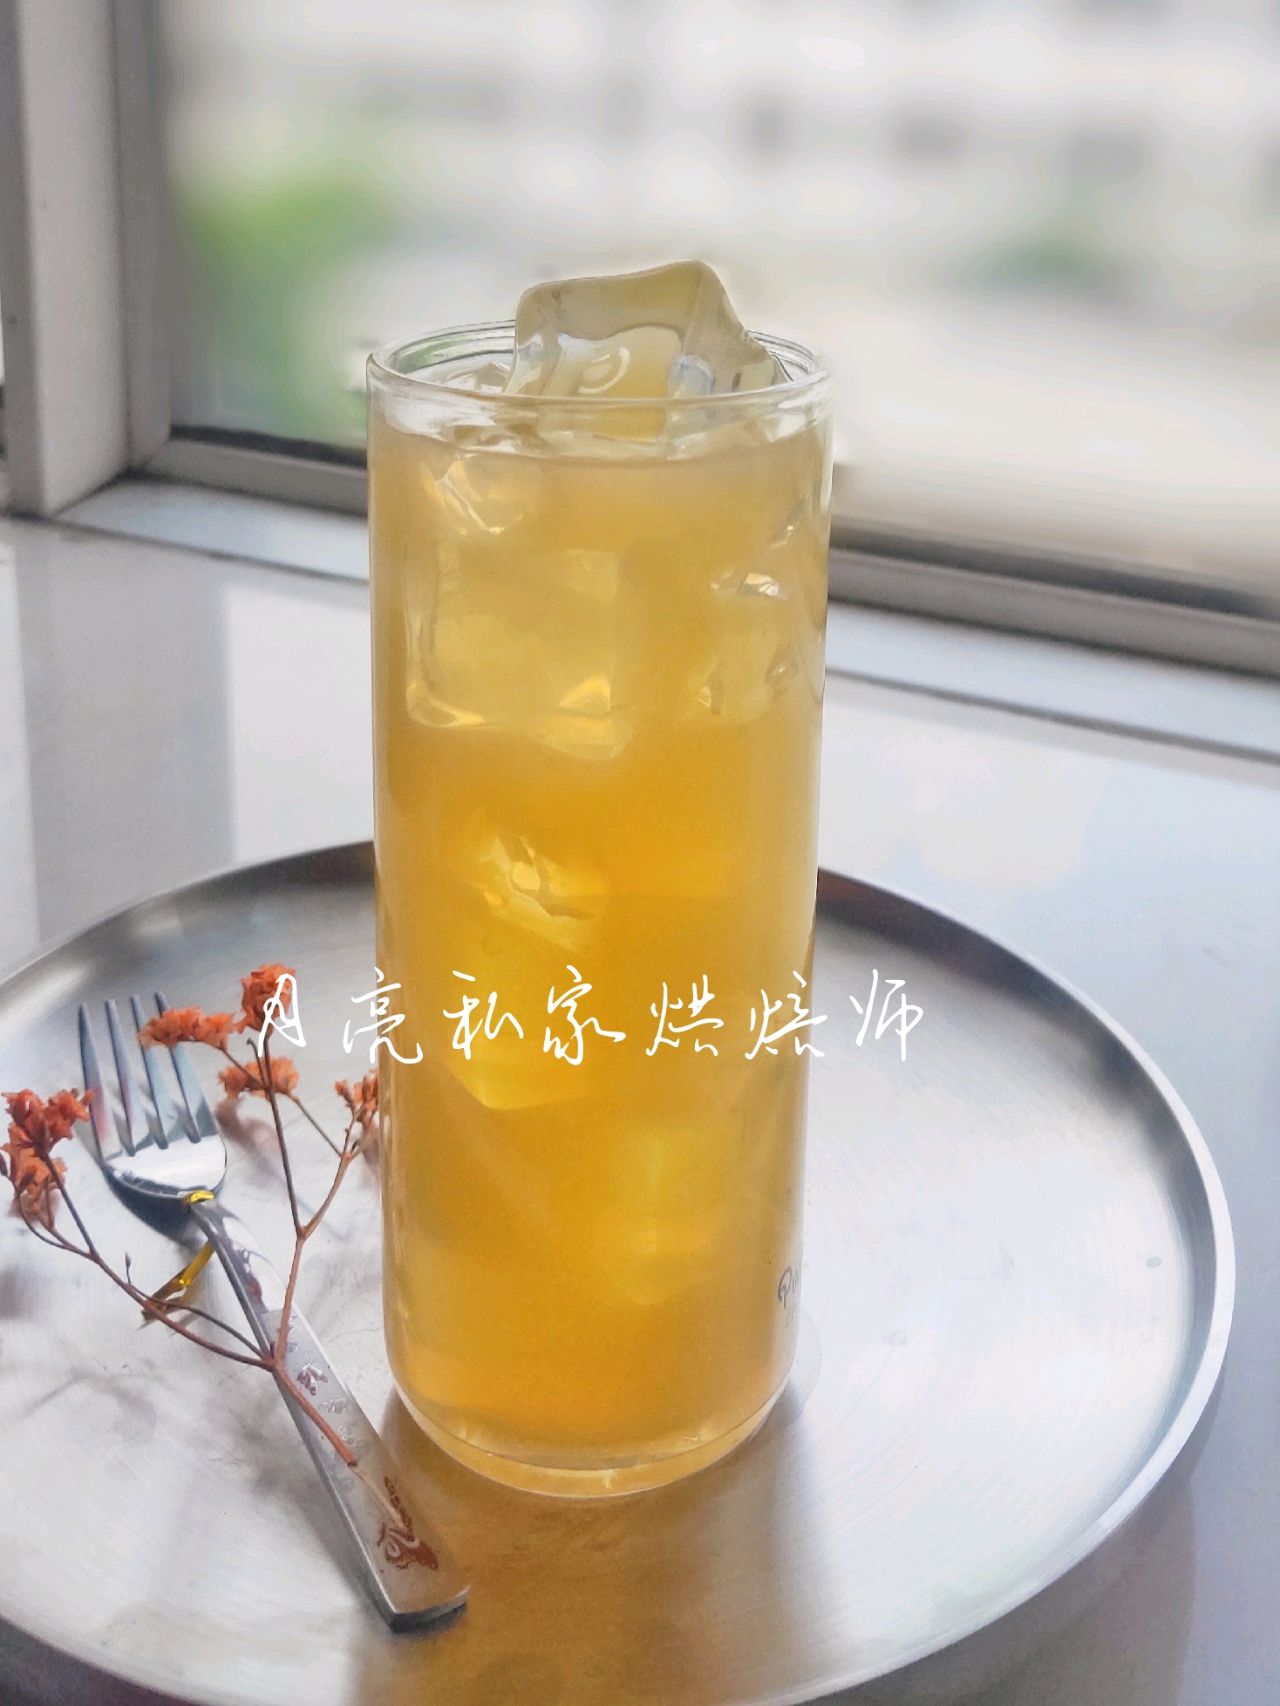 450ML 安梨汁_河北燕禾泉食品股份有限公司 | 安梨汁 | 山楂汁